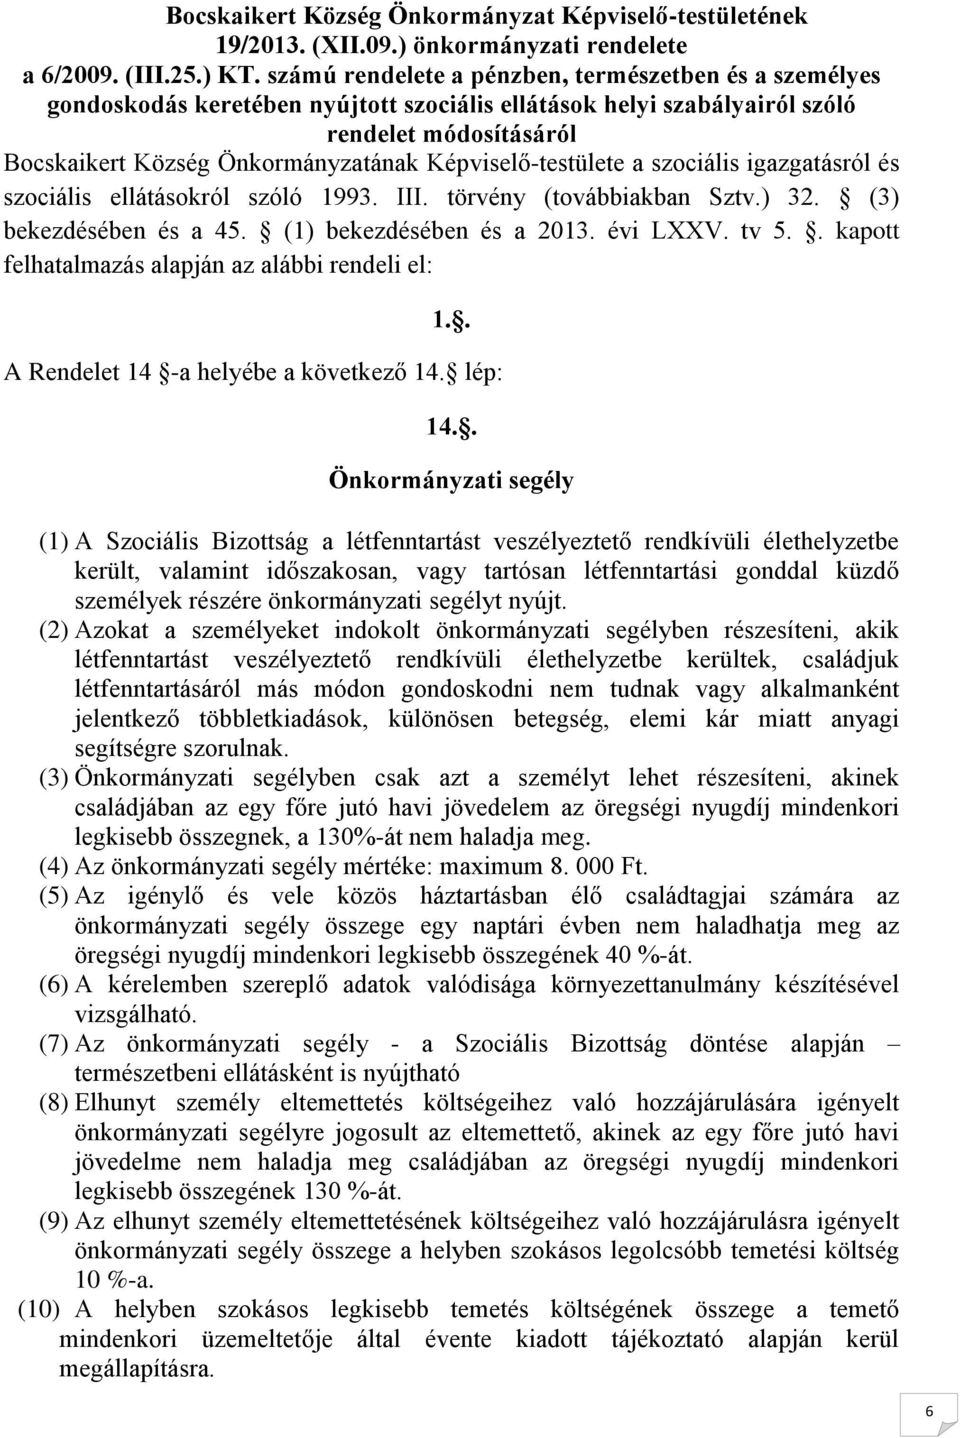 Képviselő-testülete a szociális igazgatásról és szociális ellátásokról szóló 1993. III. törvény (továbbiakban Sztv.) 32. (3) bekezdésében és a 45. (1) bekezdésében és a 2013. évi LXXV. tv 5.